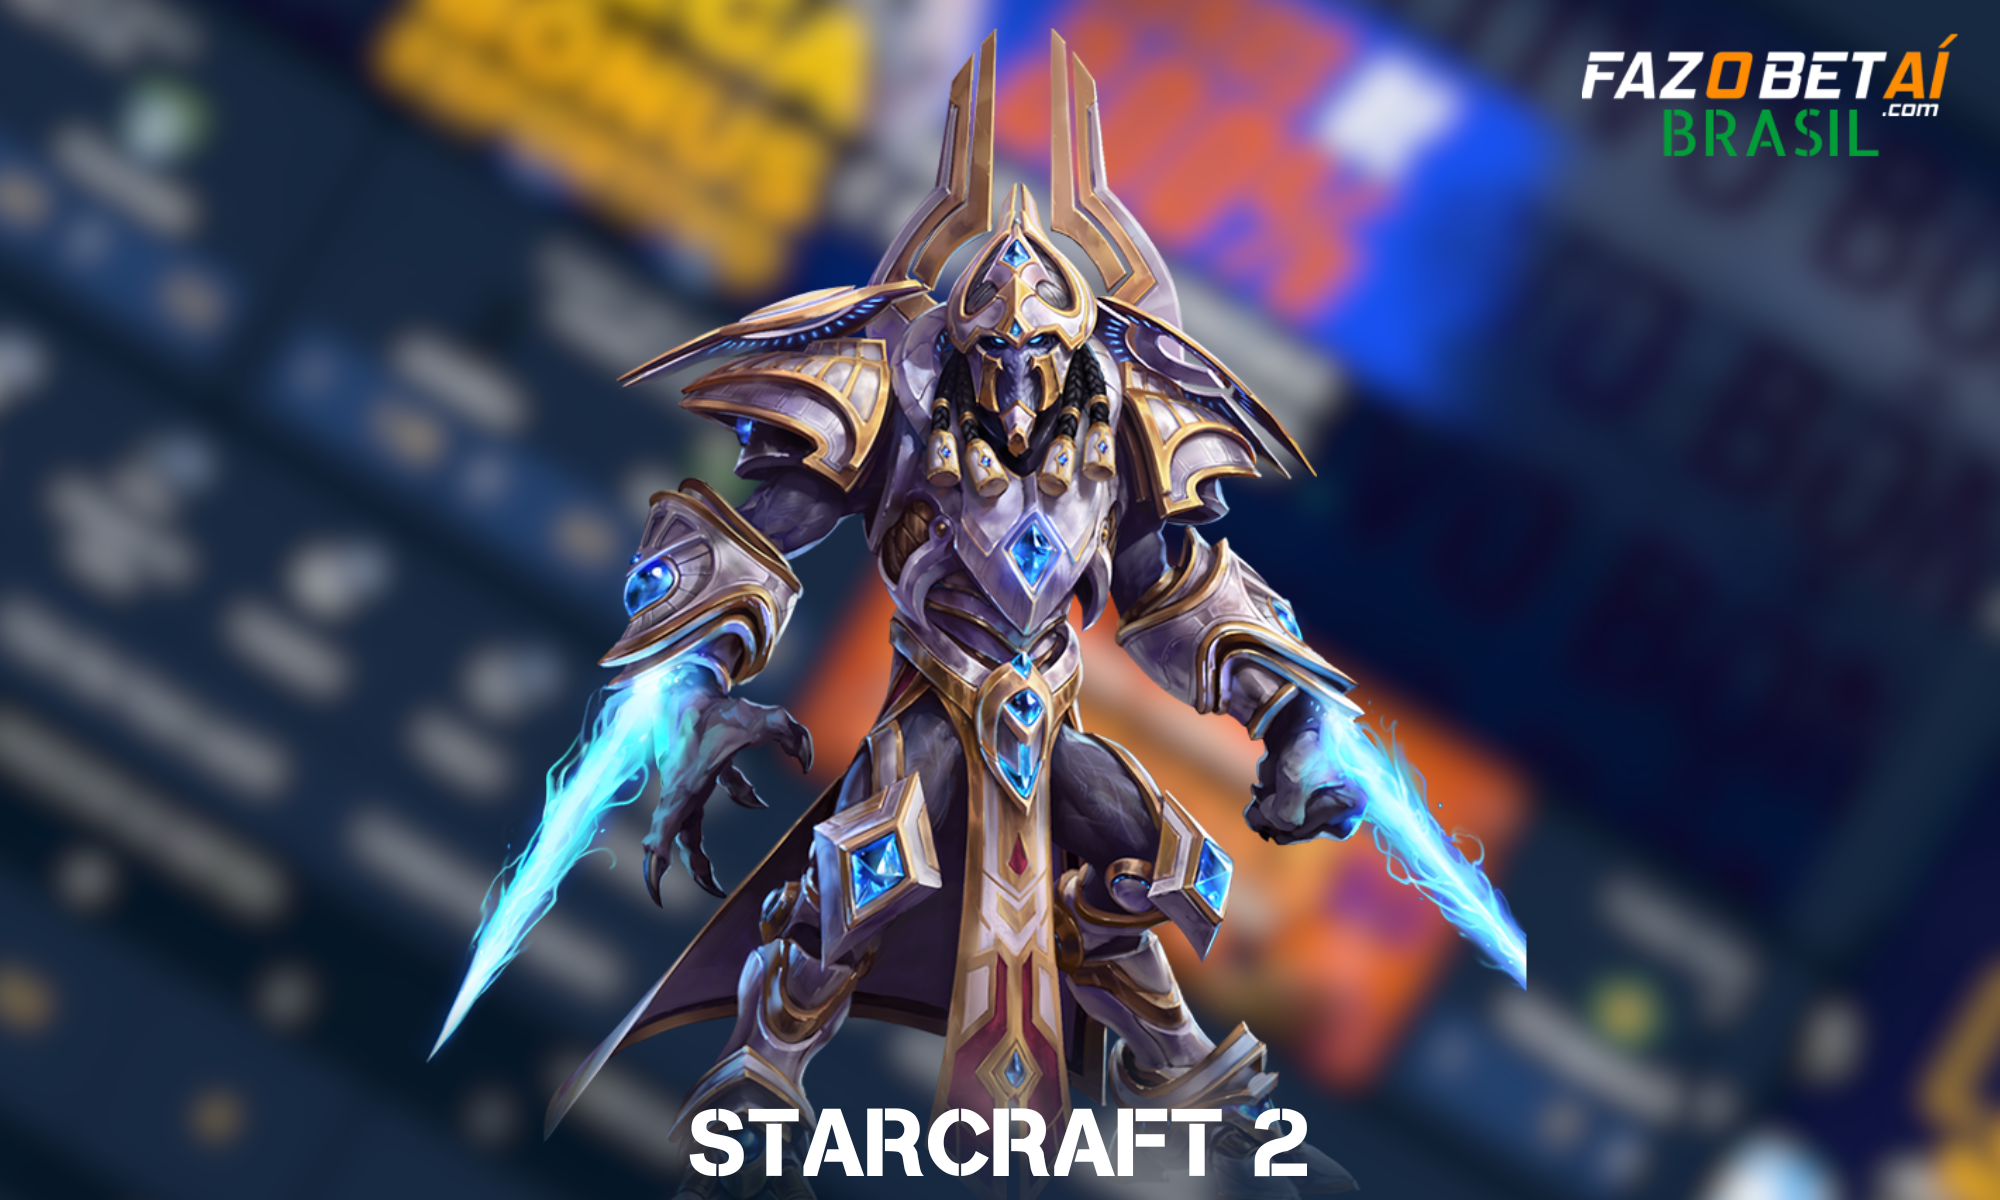 Os fãs de Starcraft 2 também poderão fazer apostas Fazobetai em qualquer torneio